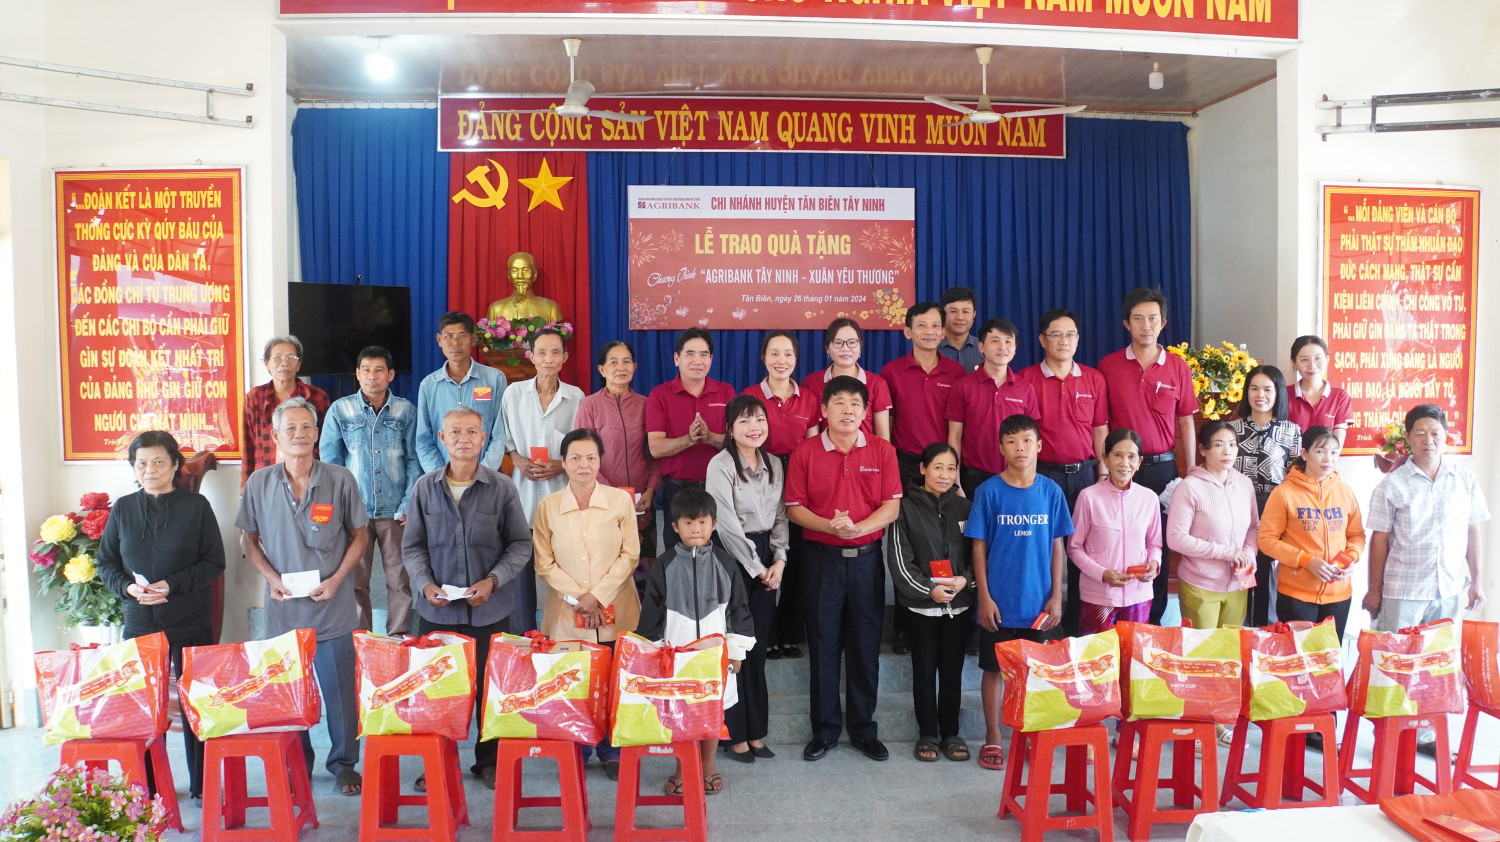 Agribank chi nhánh Tân Biên tổ chức Chương trình “Agribank Tây Ninh – Xuân yêu thương”